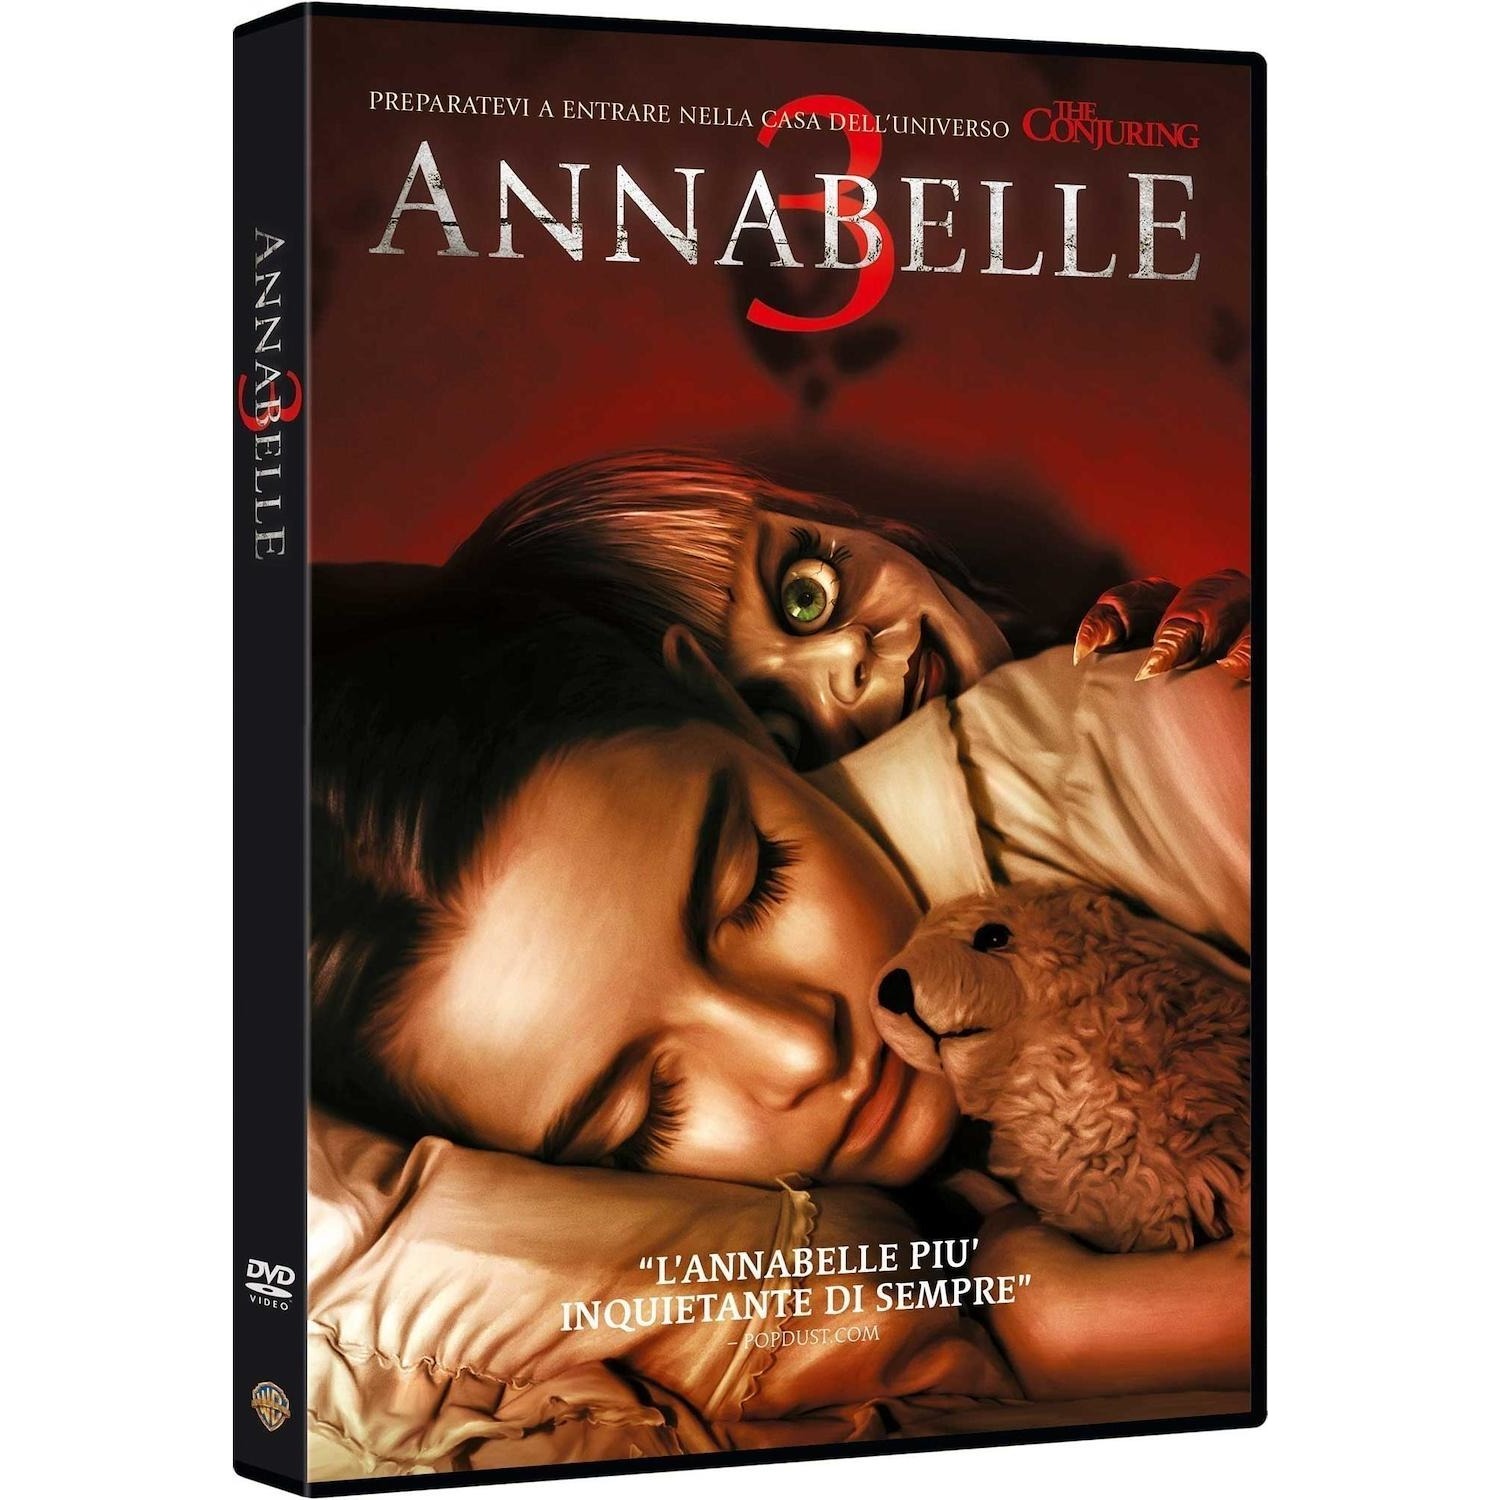 Immagine per DVD Annabelle 3 da DIMOStore